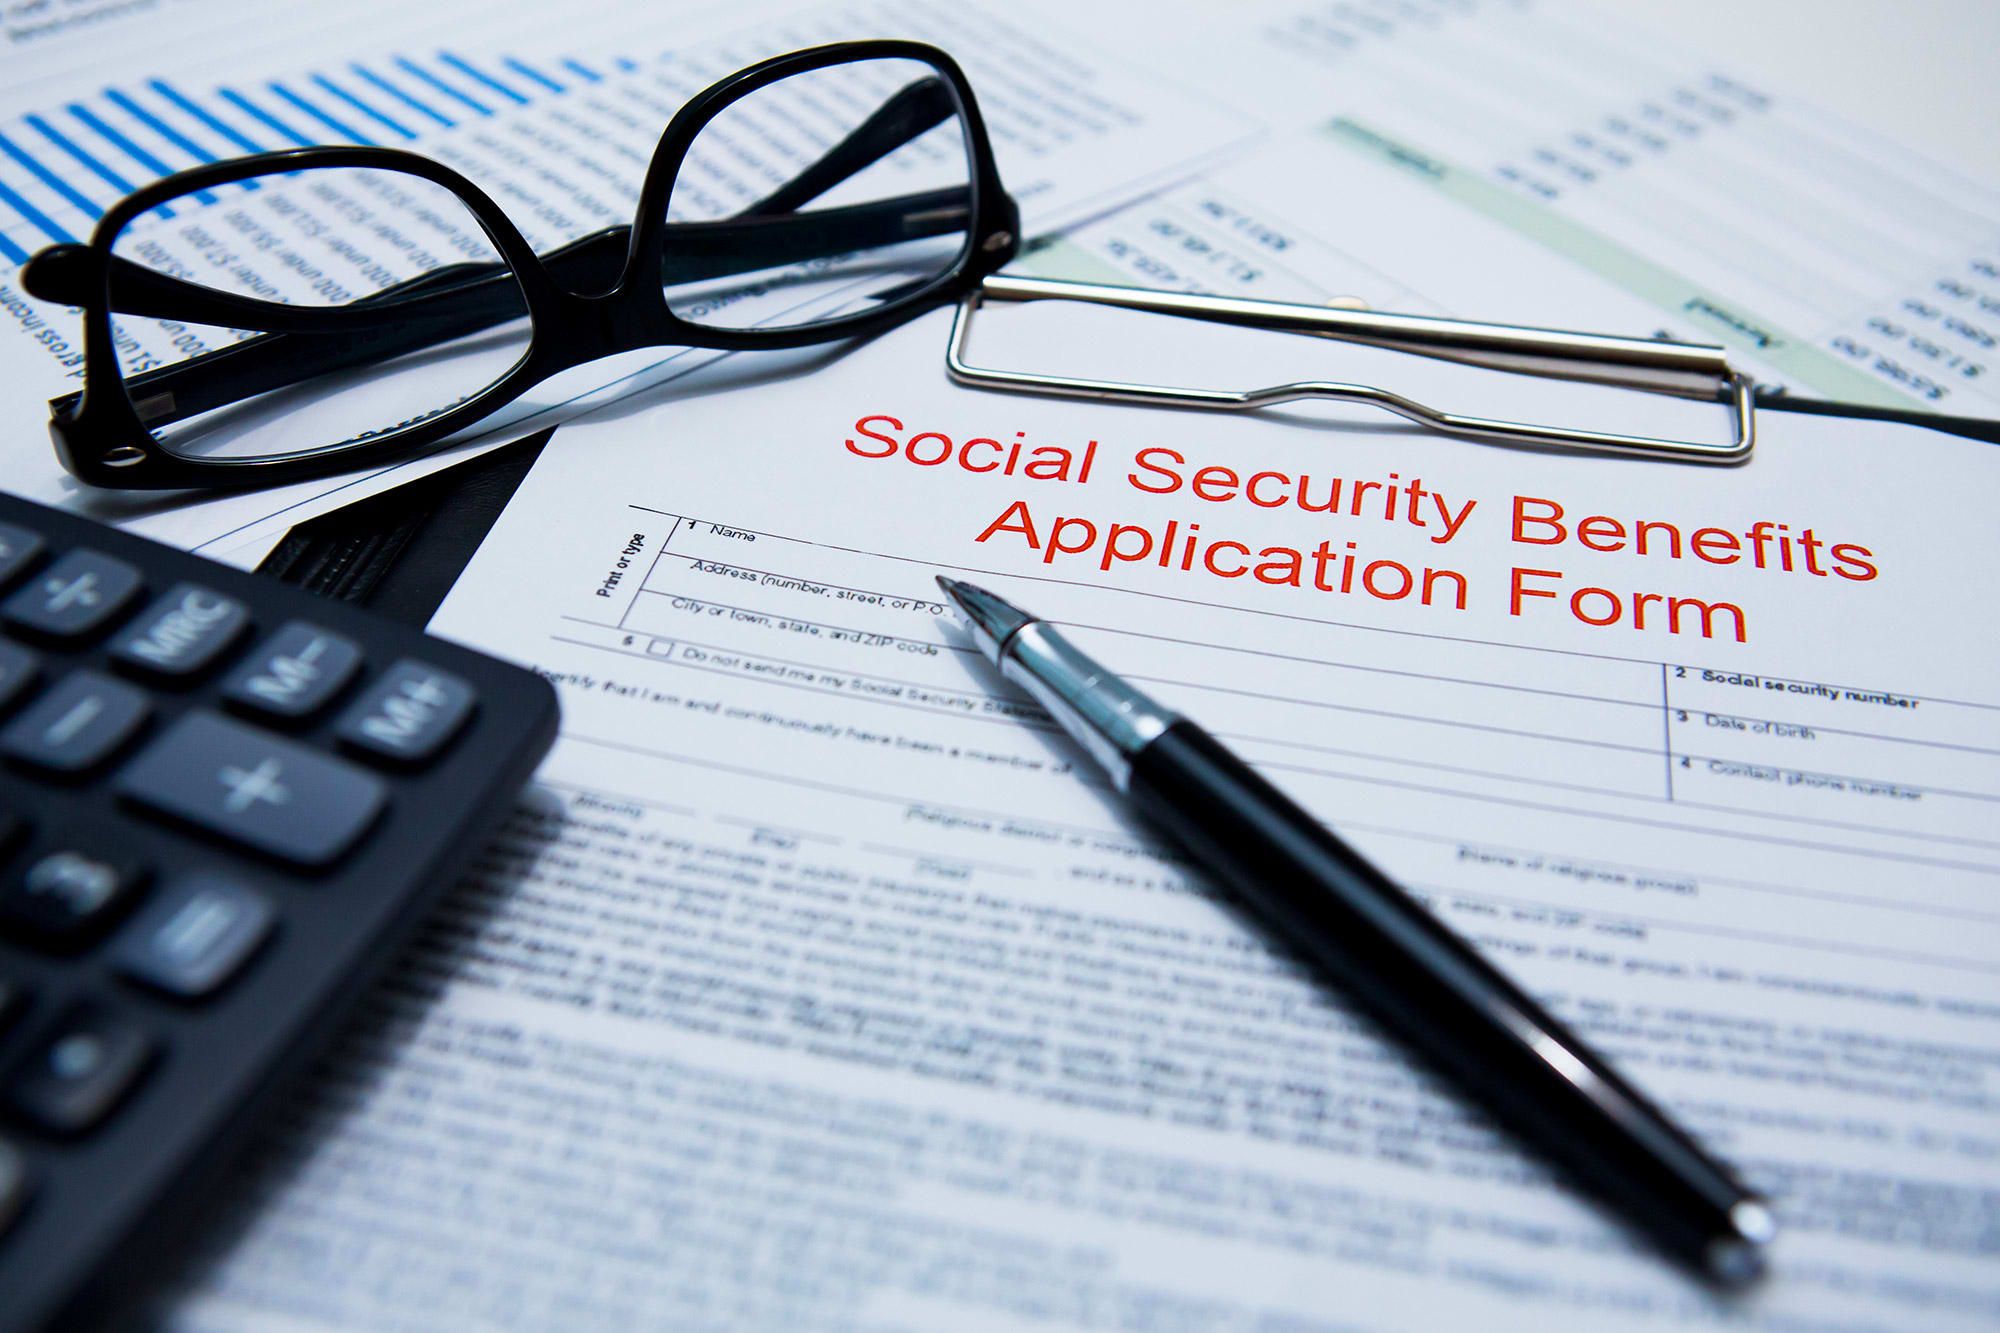 Seguridad Social hoy y mañana: ¿Qué tipo de información necesitaré proporcionar si  quiero solicitar en línea los beneficios de jubilación?